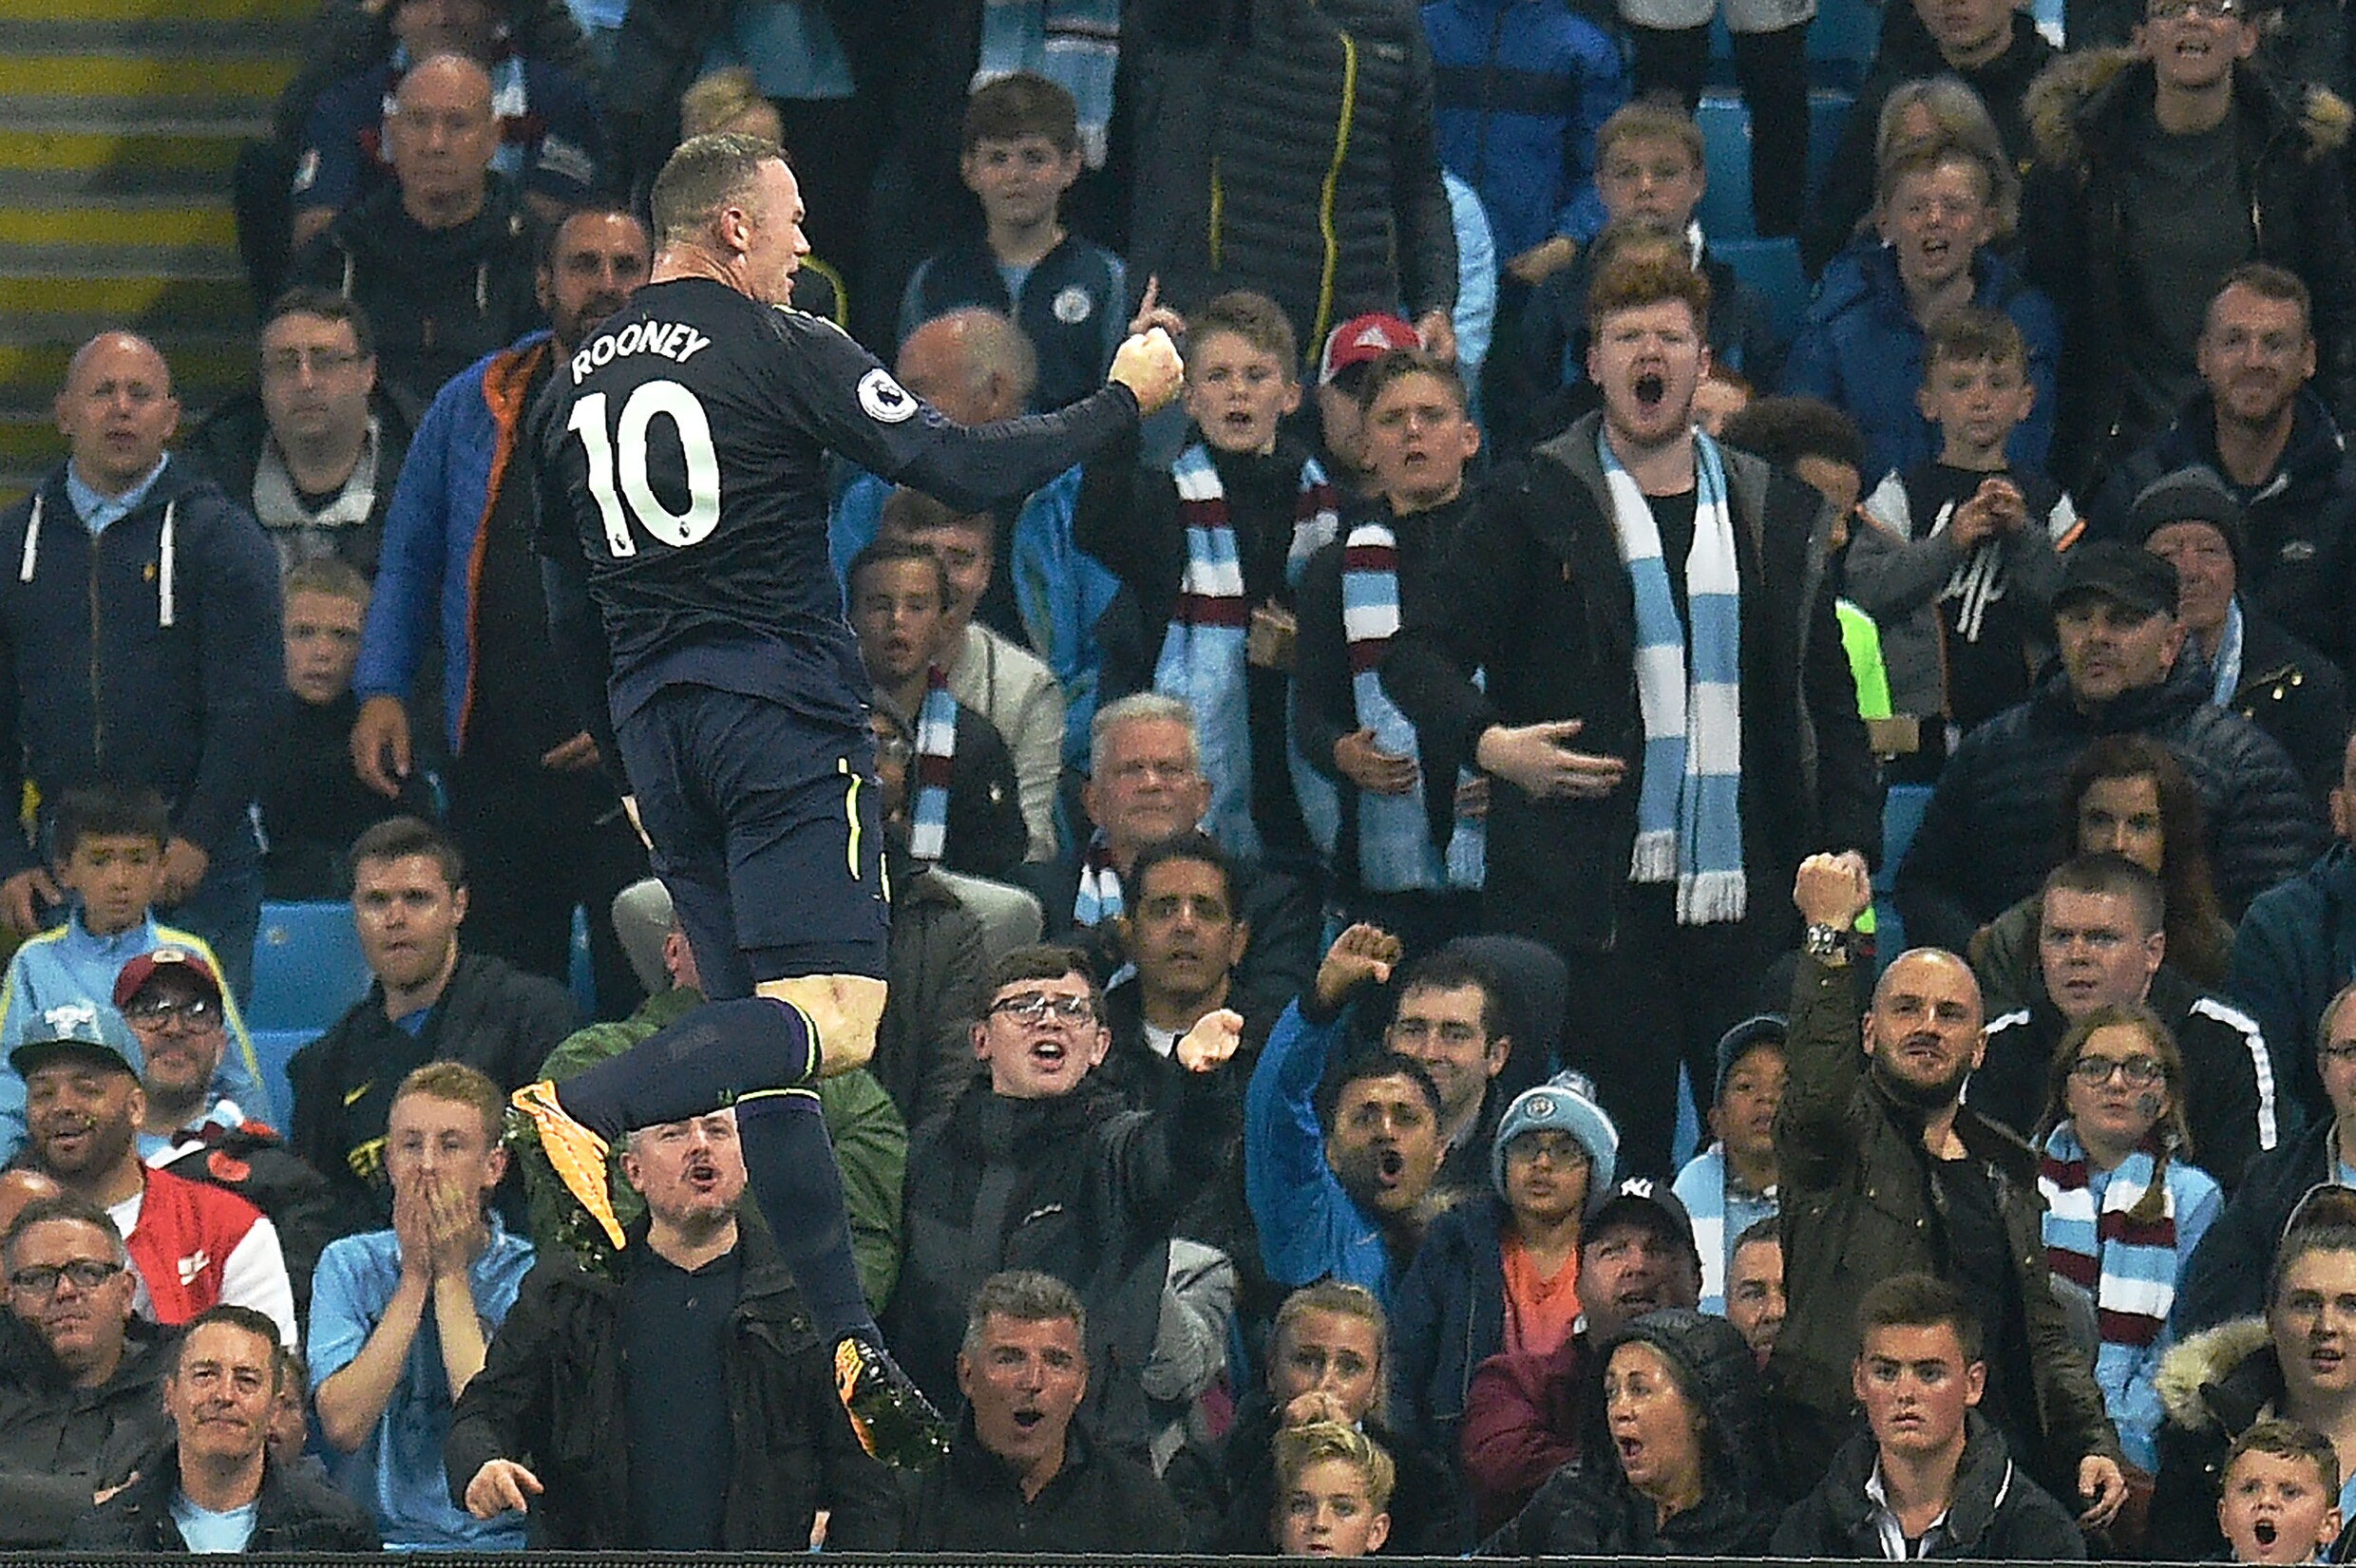 Rooney laat net dezelfde fans als in 2012 hem verwensen: "Altijd leuk om bekende gezichten terug te zien"